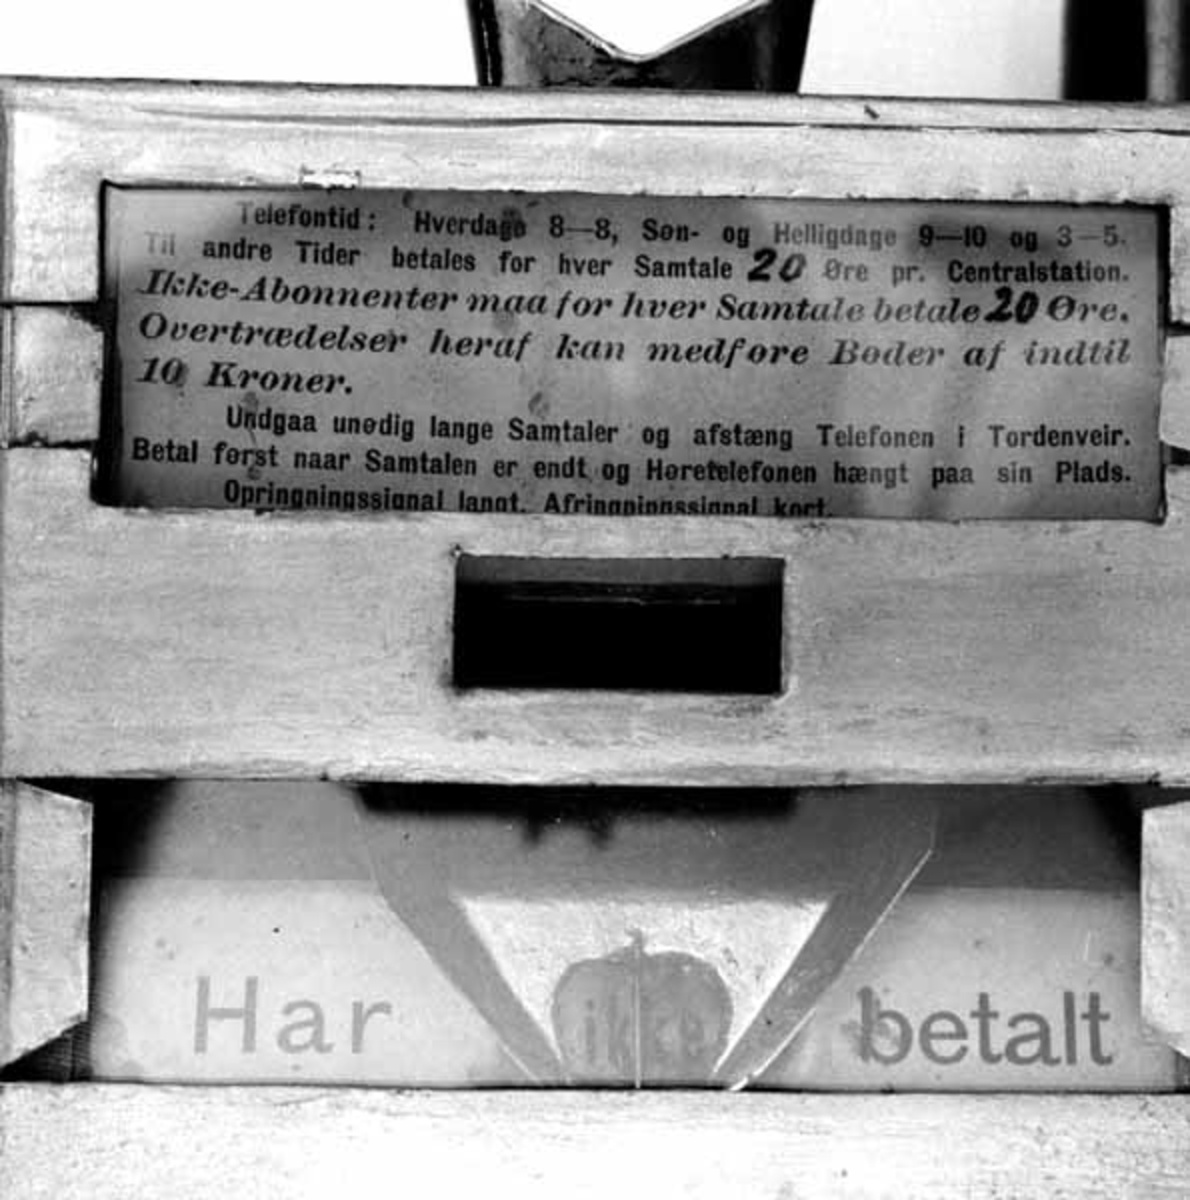 Kasse for myntbetaling av telefonsamtaler, konstruert og patentert av Eberhard Kokkin (1856-1920) i 1895. Innretningen er lagd som en rektangulær blikkboks - 18,2 X 12,5 X 7,3 centimeter, med tre glassvinduer på den flatsida som skal vende fram. Bak det øverste av dem er det innlagt et ark med følgende trykte tekst: «Telefontid: Hverdage 8-8, Søn- og Helligdage 9-10 og 3-5. Til andre Tider betales 20 Øre pr. Centralstation. Ikke-Abonnenter maa for hver Samtale betale 20 Øre. Overtrædelser heraf kan medføre Bøder af indtil 10 Kroner. Undgaa unødig lange Samtaler og afstæng Telefonen i Tordenveir. Betal først naar Samtalen er endt og Høretelefonen lagt paa sin Plads. Opringningssignal langt. Afringningssignal kort.» Det midtre glassvinduet gir bare et innblikk i ei mørk kasse, antakelig der myntene skulle lande. Det nedre vinduet viser inn på ei skrå flate med et ark hvor det står «Har» og «betalt». Mellom disse ordene er det ei renne for mynt. På denne renna er det plasser en liten lapp med ordet «ikke». I den nedre enden av kassa er det en beholder av blikk - 12,2 X 7,3 X 7,2 centimeter - med en messingknapp av en type som ofte ble brukt på skuffefronter sentralt på undersida. I tverrendene av den ytre kassa og skuffen er det rektangulære spalter for en 14,7 centimeter lang jerntein som stikkes gjennom, og låses ved hjelå av et lite hengelås av messing i et hull i enden av jernteinen. Nøkkel til låset er vedhengt. På innsida av skuffens ene endevegg er det for øvrig ei lita trakt, som skal gjøre det enklere å stikke teinen inn riktig. På toppen av kassa er det ei innkastspalte for mynter. Diagonalt på den ene sida av kassa er det et rør som omslutter ei ståltrådhekte. På baksida av kassa er det påloddet fire bandjern med hull for oppskruing på vegg. Sentralt på frontens nedre del har konstruktøren loddet på en liten mynt med teksten «E. KOKKOIN PATENT  AASTA ST.» Ytterflatene på kassa er svartlakkerte, med inntak av fronten, som er gullfarget.